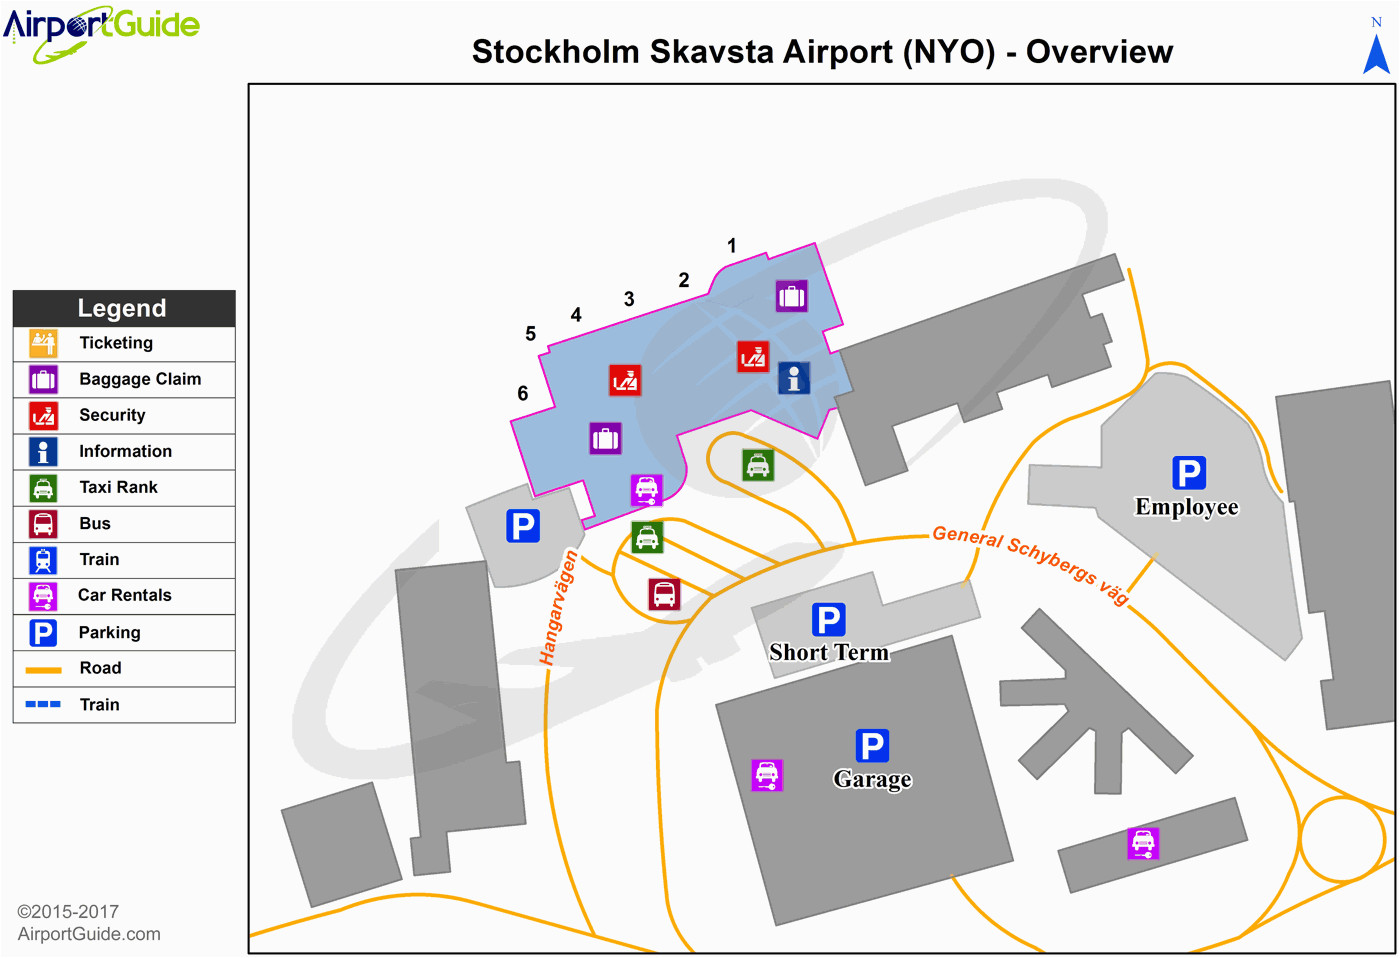 stockholm nykoping stockholm skavsta nyo airport terminal map